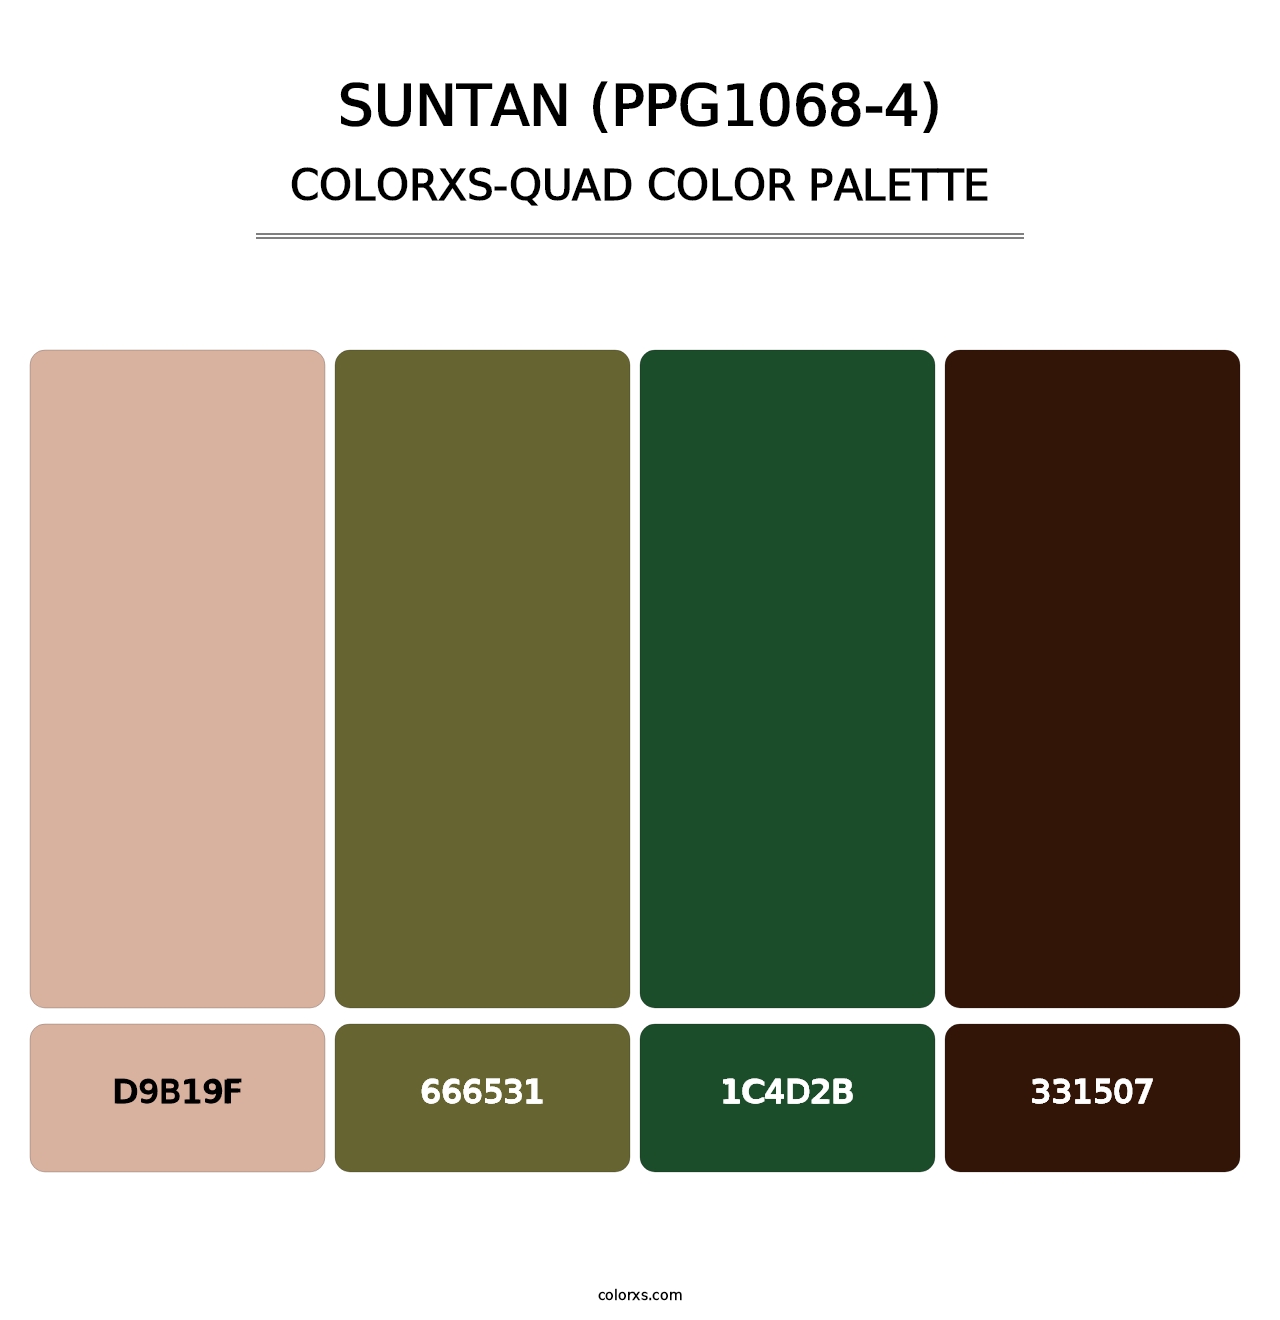 Suntan (PPG1068-4) - Colorxs Quad Palette